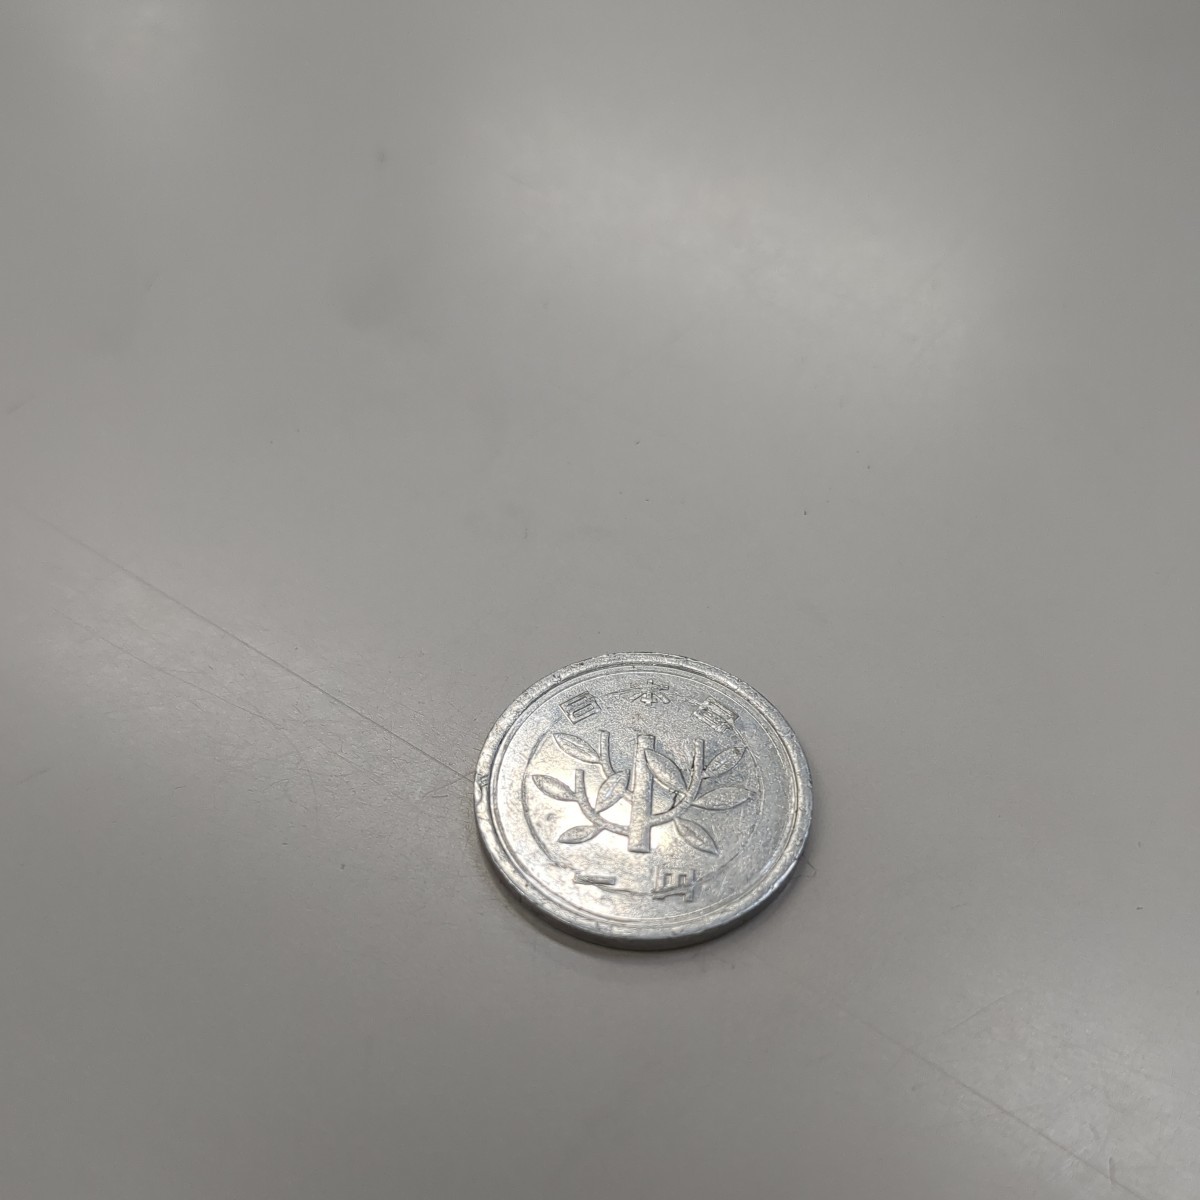 1 jpy coin Showa era 55 year error coin wheel ..